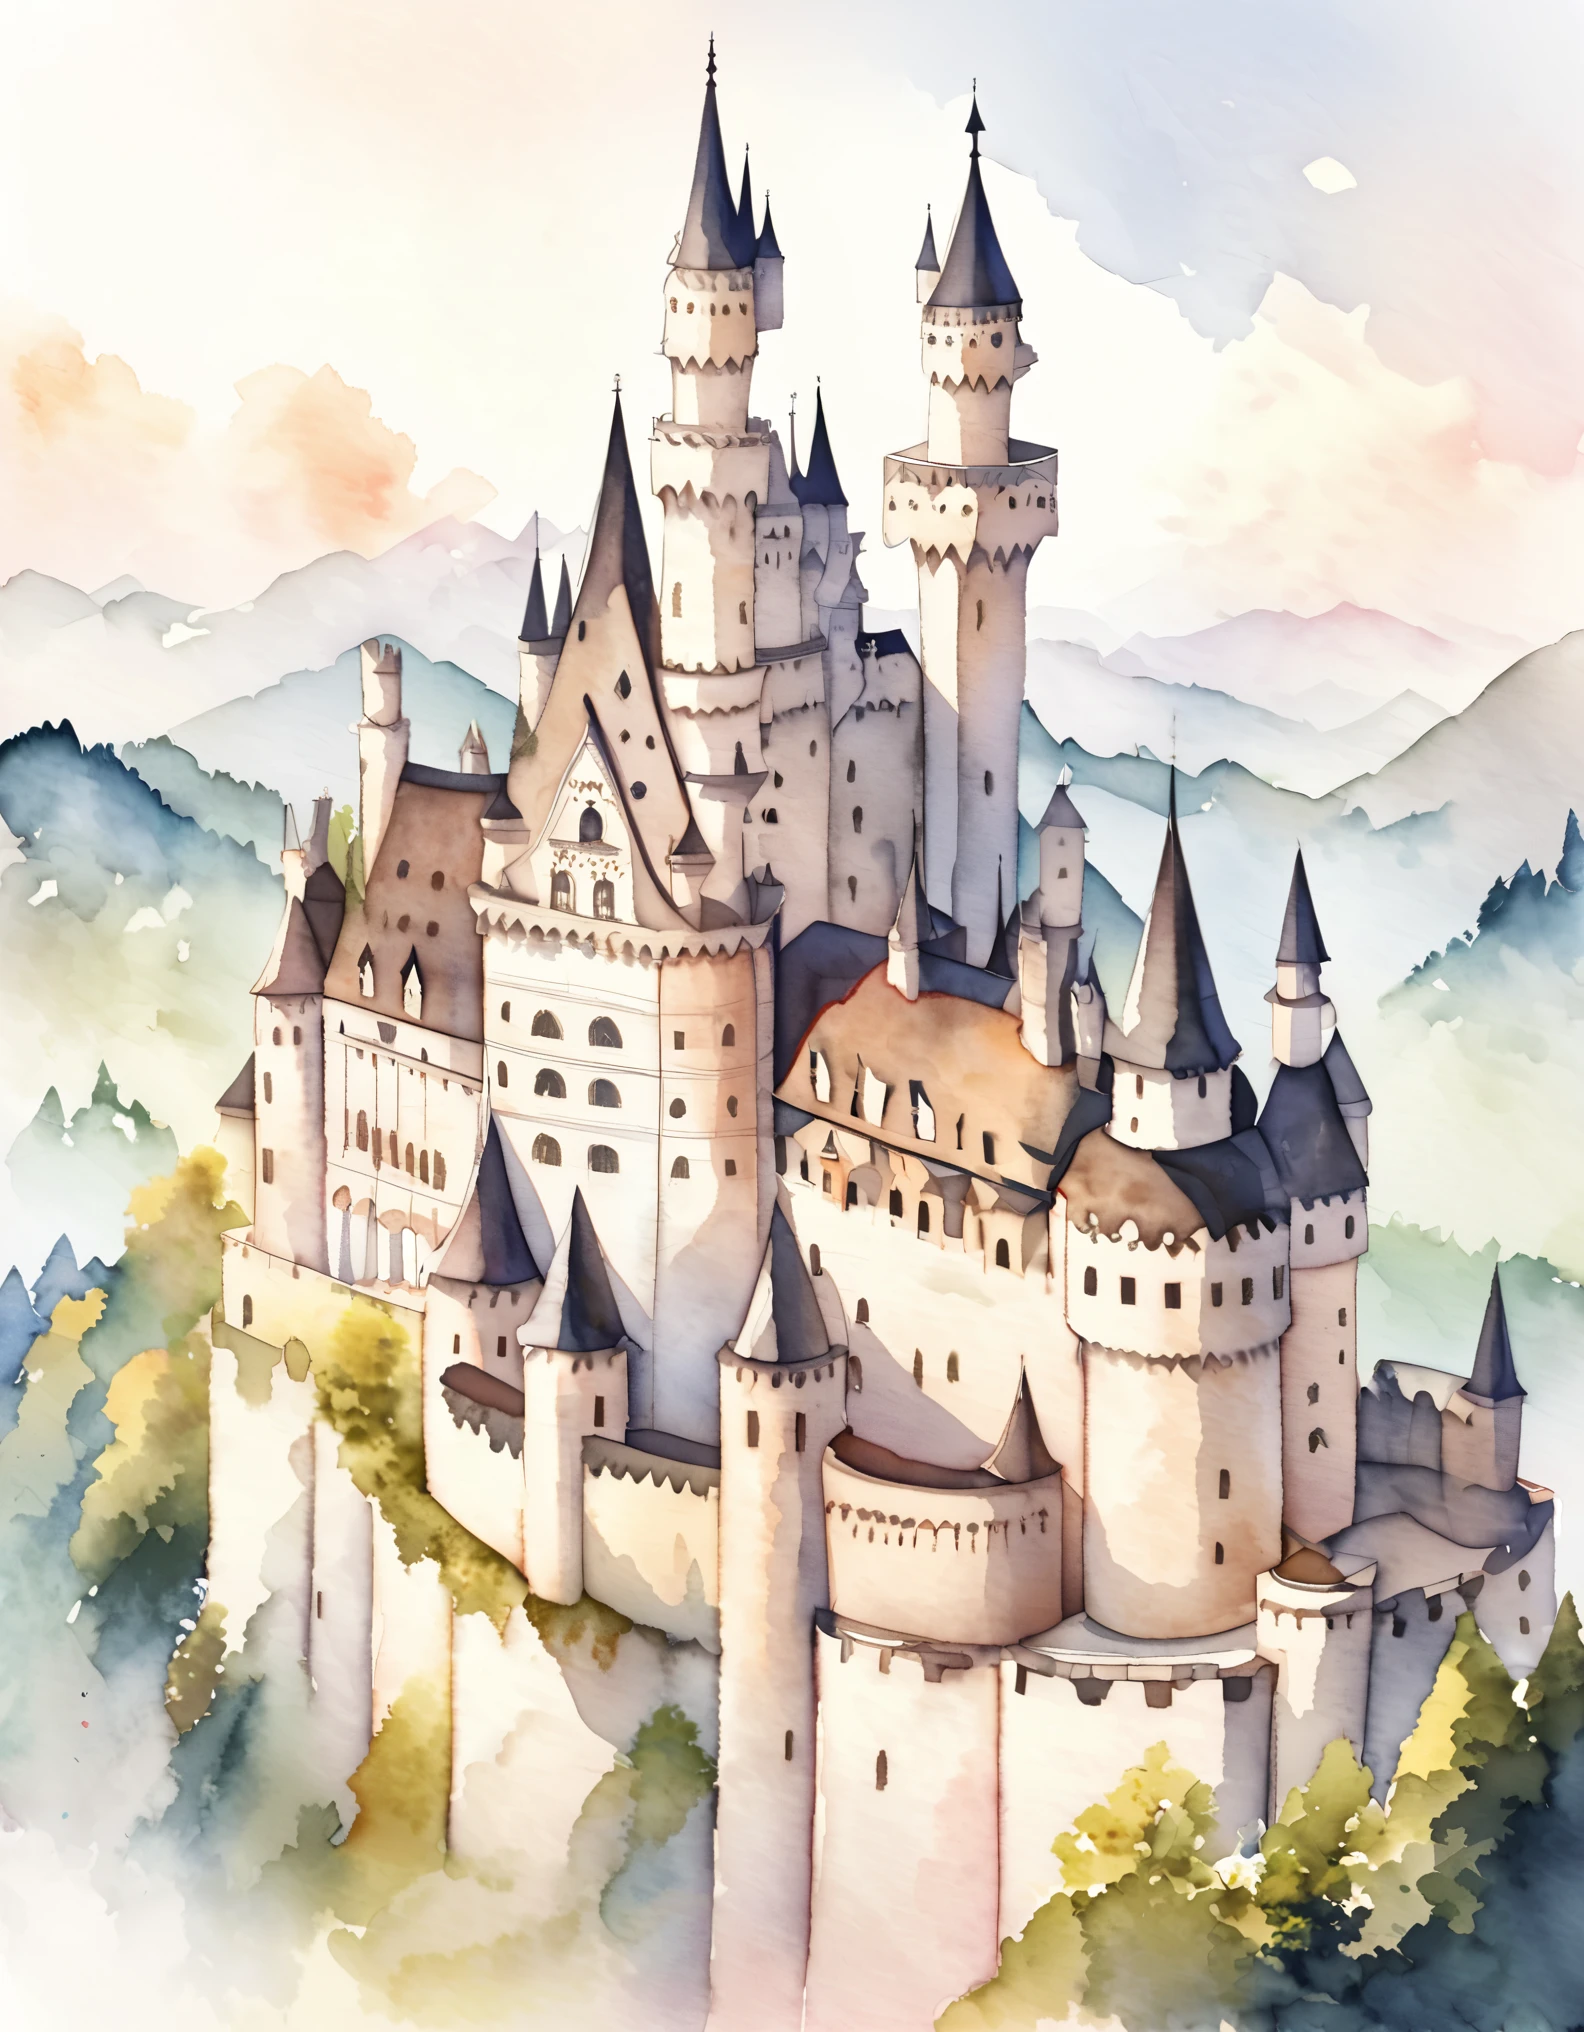 Замок Нойшванштайн, Наружные стены построены из кирпича, покрытого белым известняком.., Романтический замок для короля, преследующего несбывшуюся мечту, красивый замок, Замки Германии, Построен на холме, акварель:1.2, причудливый и нежный, Как иллюстрация у детей&#39;книга, Нежная кисть, тусклый, Бледные цвета создают фантастический вид.